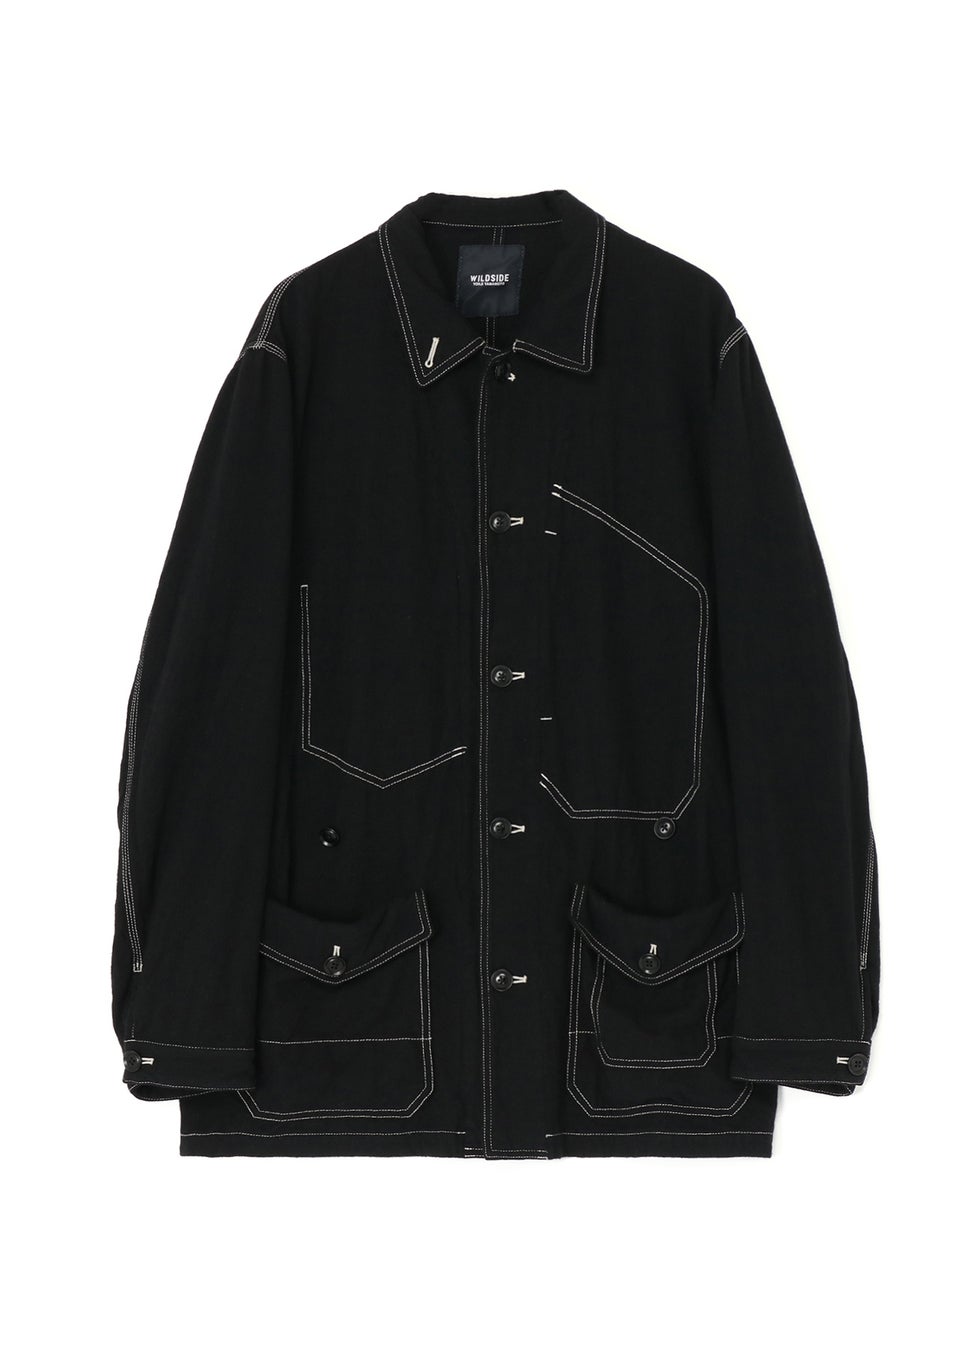 WILDSIDE YOHJI YAMAMOTOオリジナルラインより縮絨ウールで仕立てたジャケット・パンツを11月29日(水)に発売